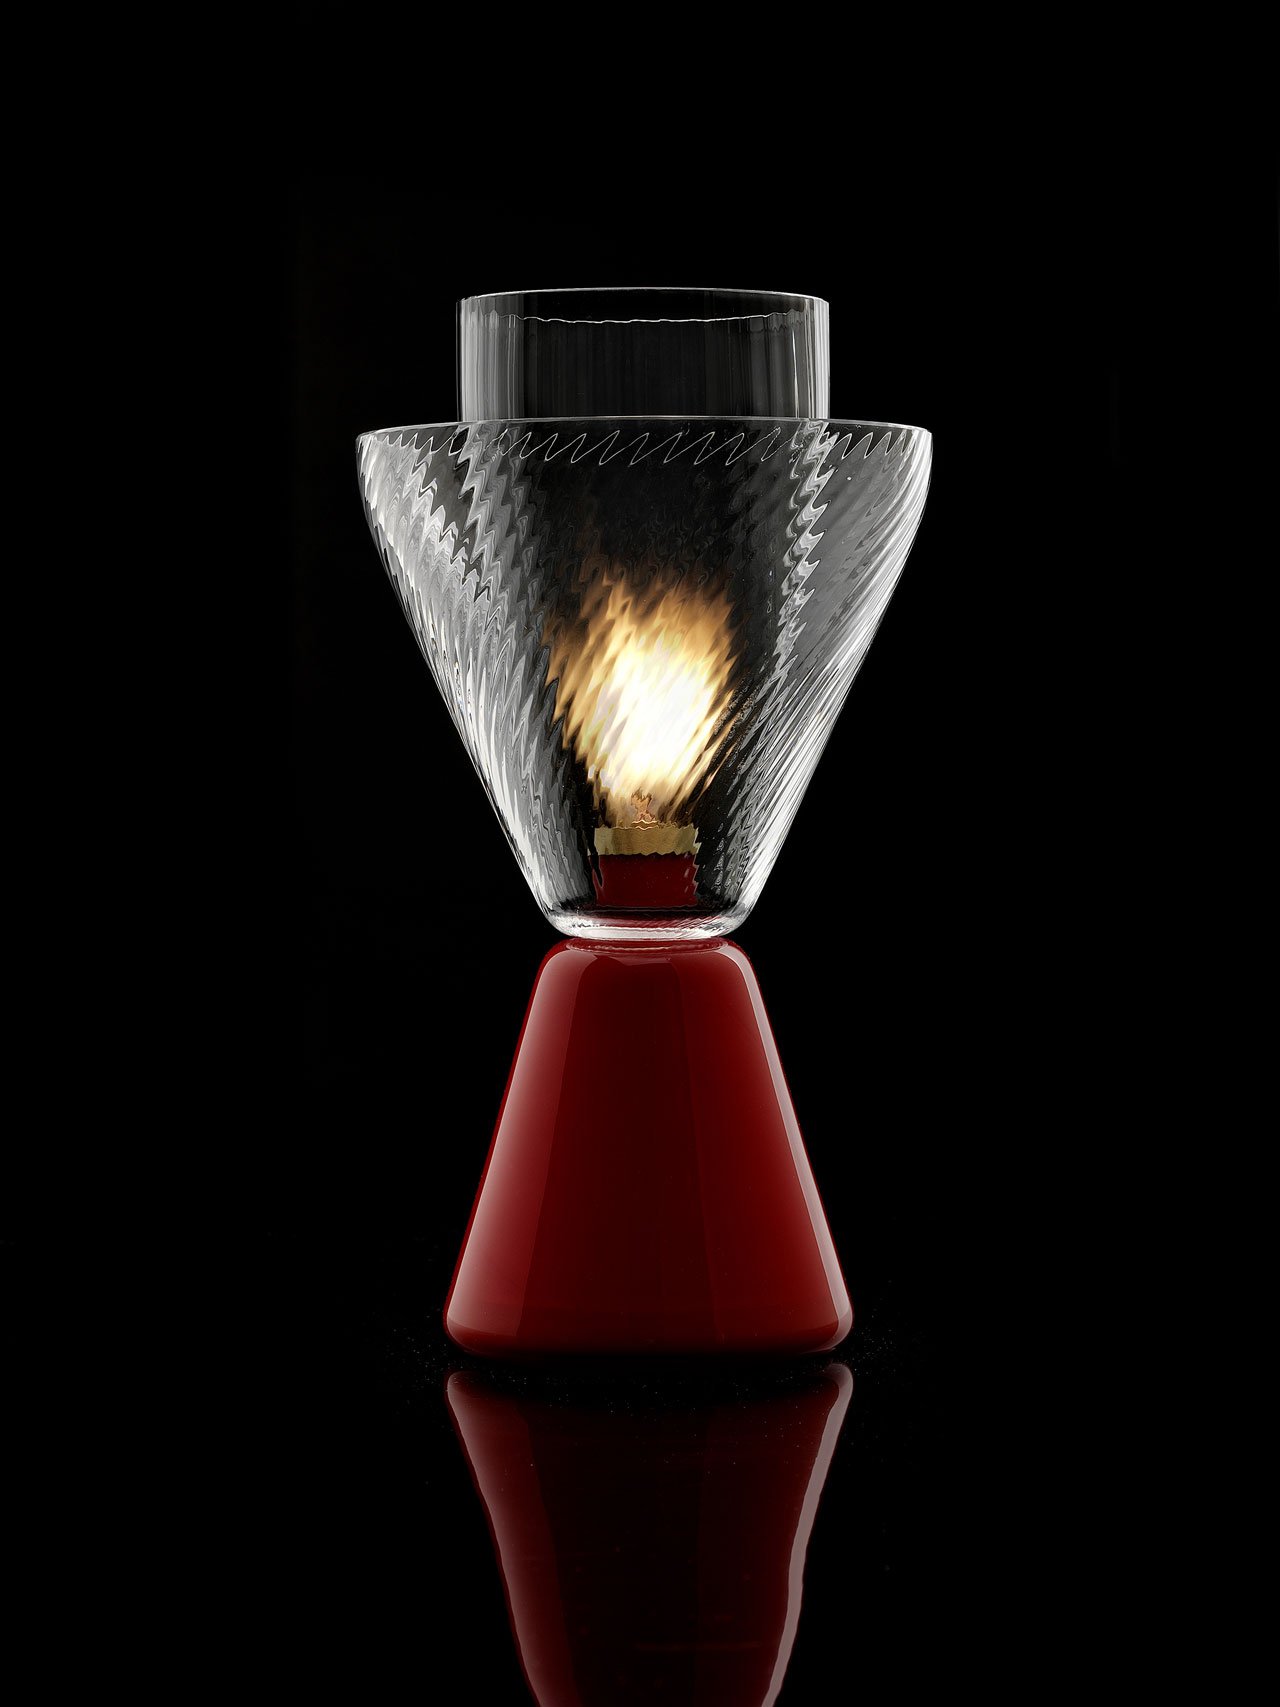 HALO oil lamp by Luca Nichetto for NasonMoretti.